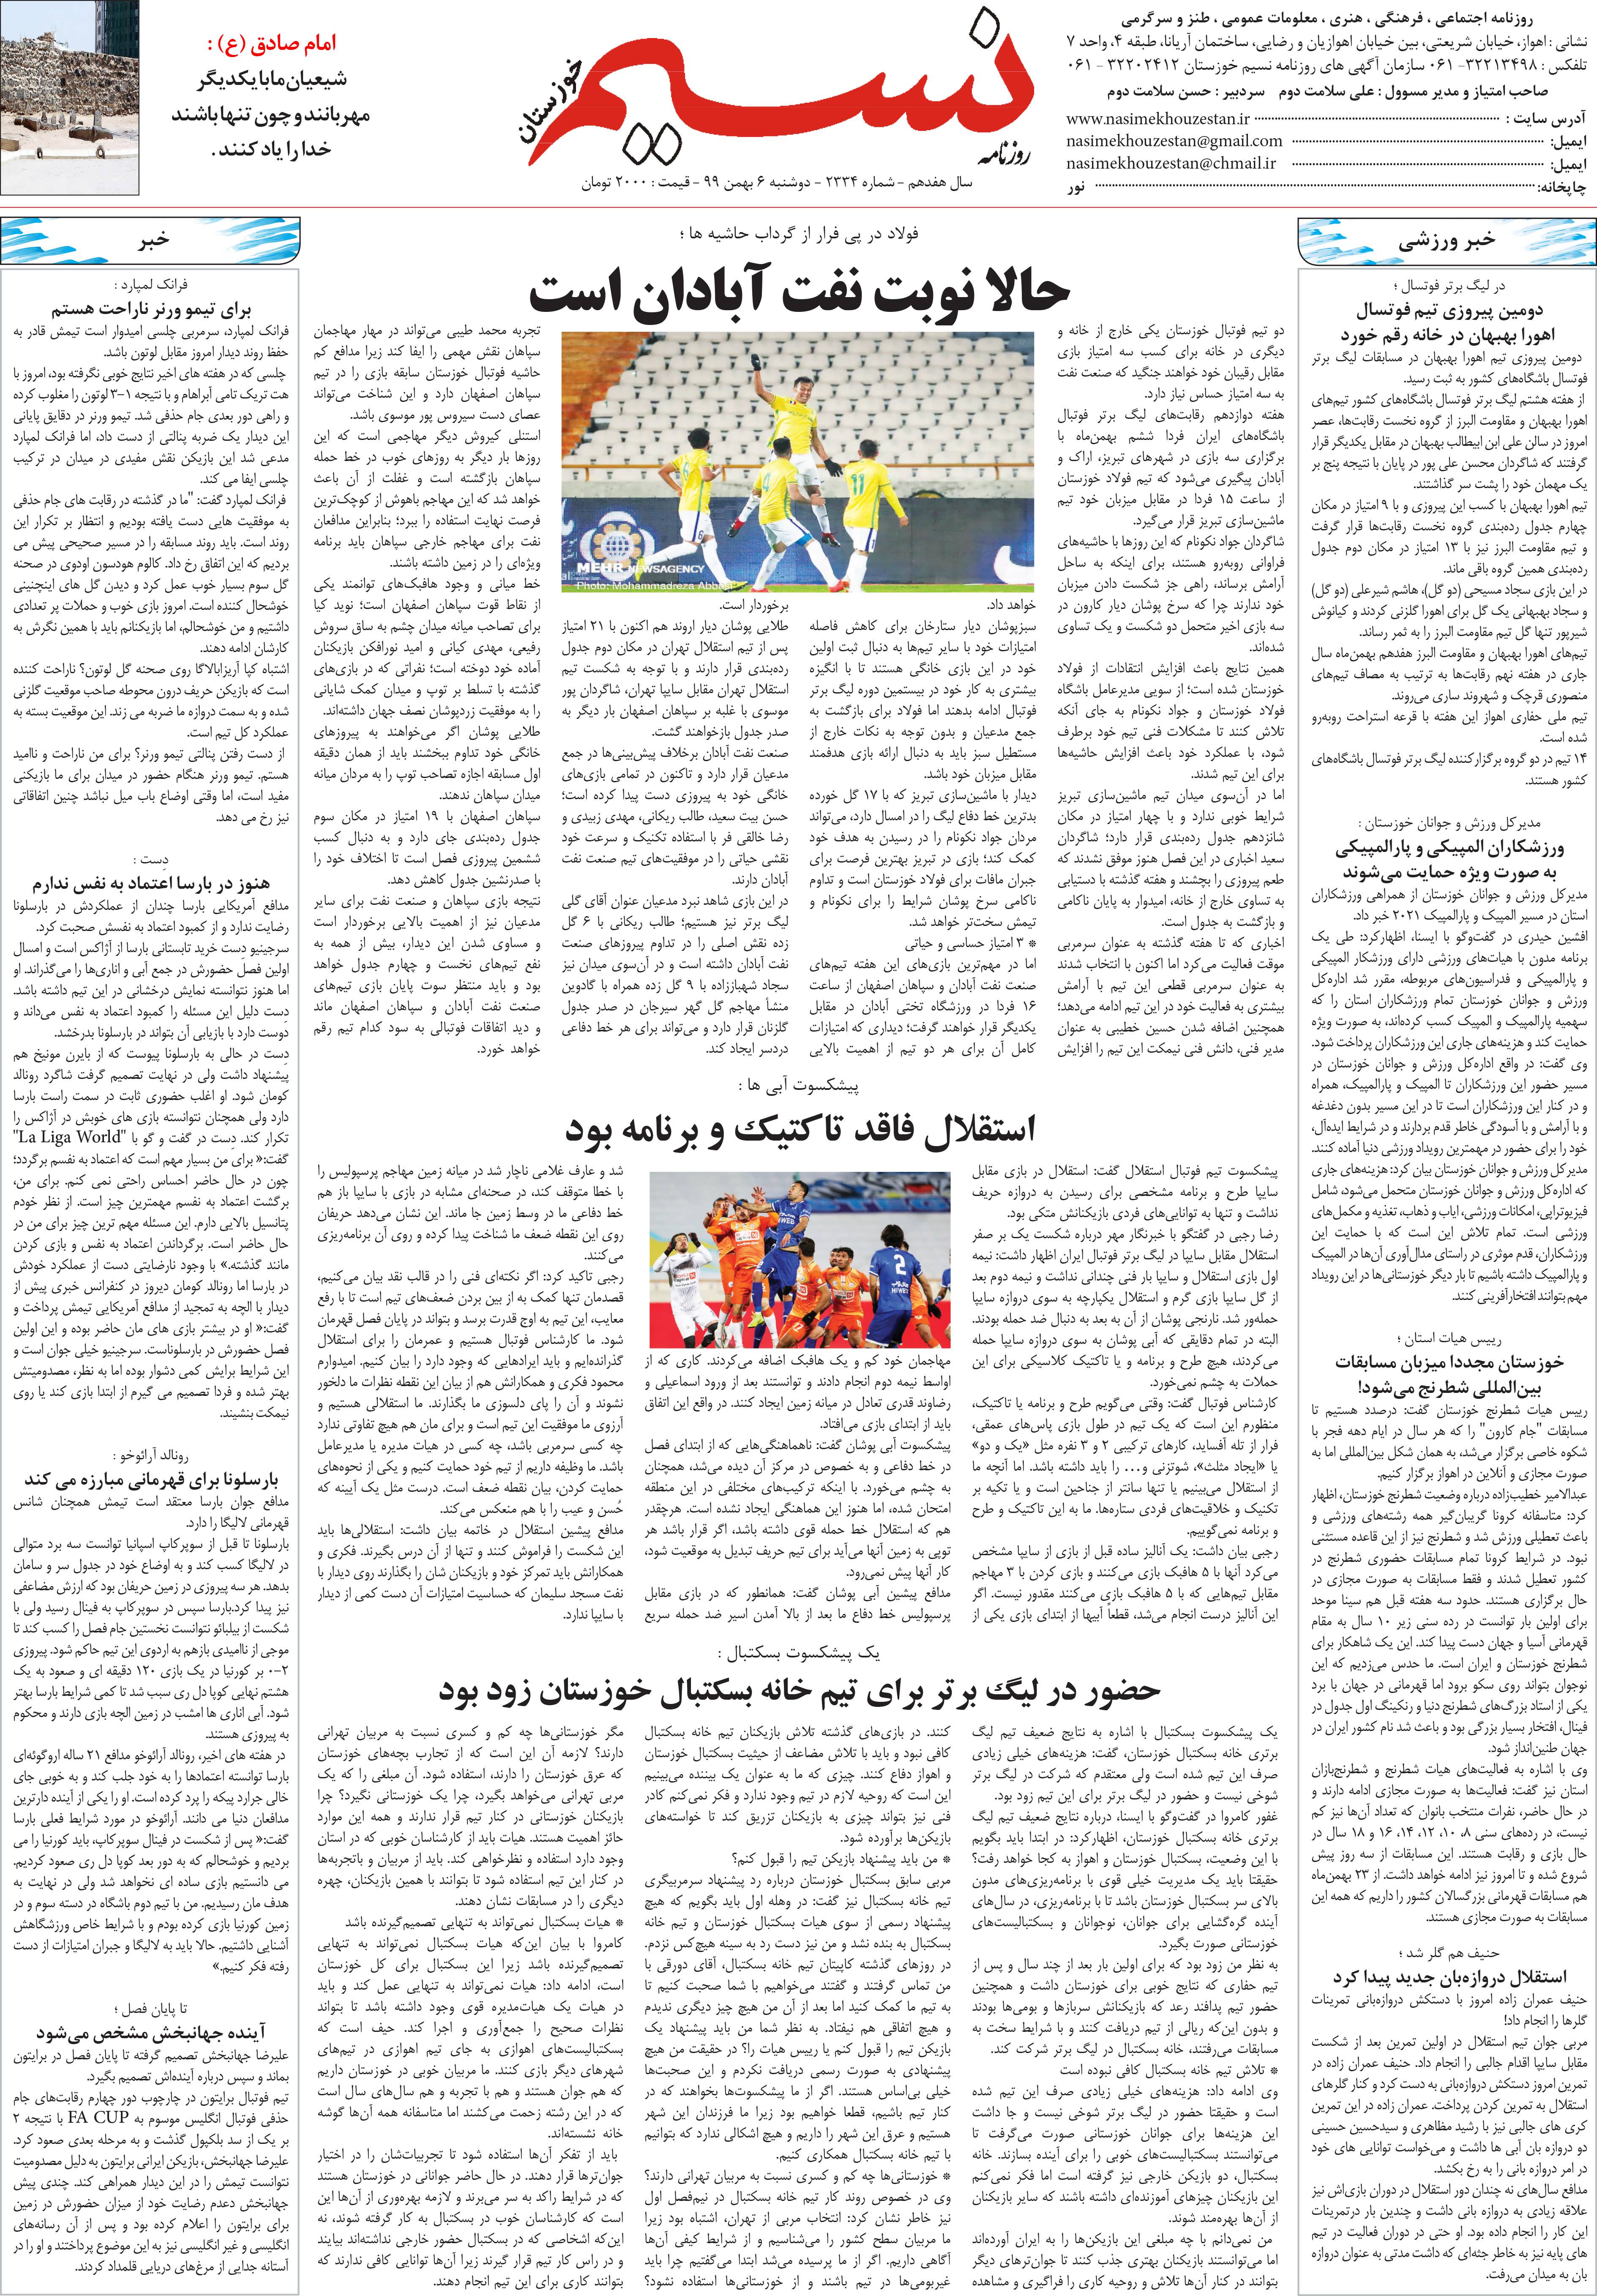 صفحه آخر روزنامه نسیم شماره 2334